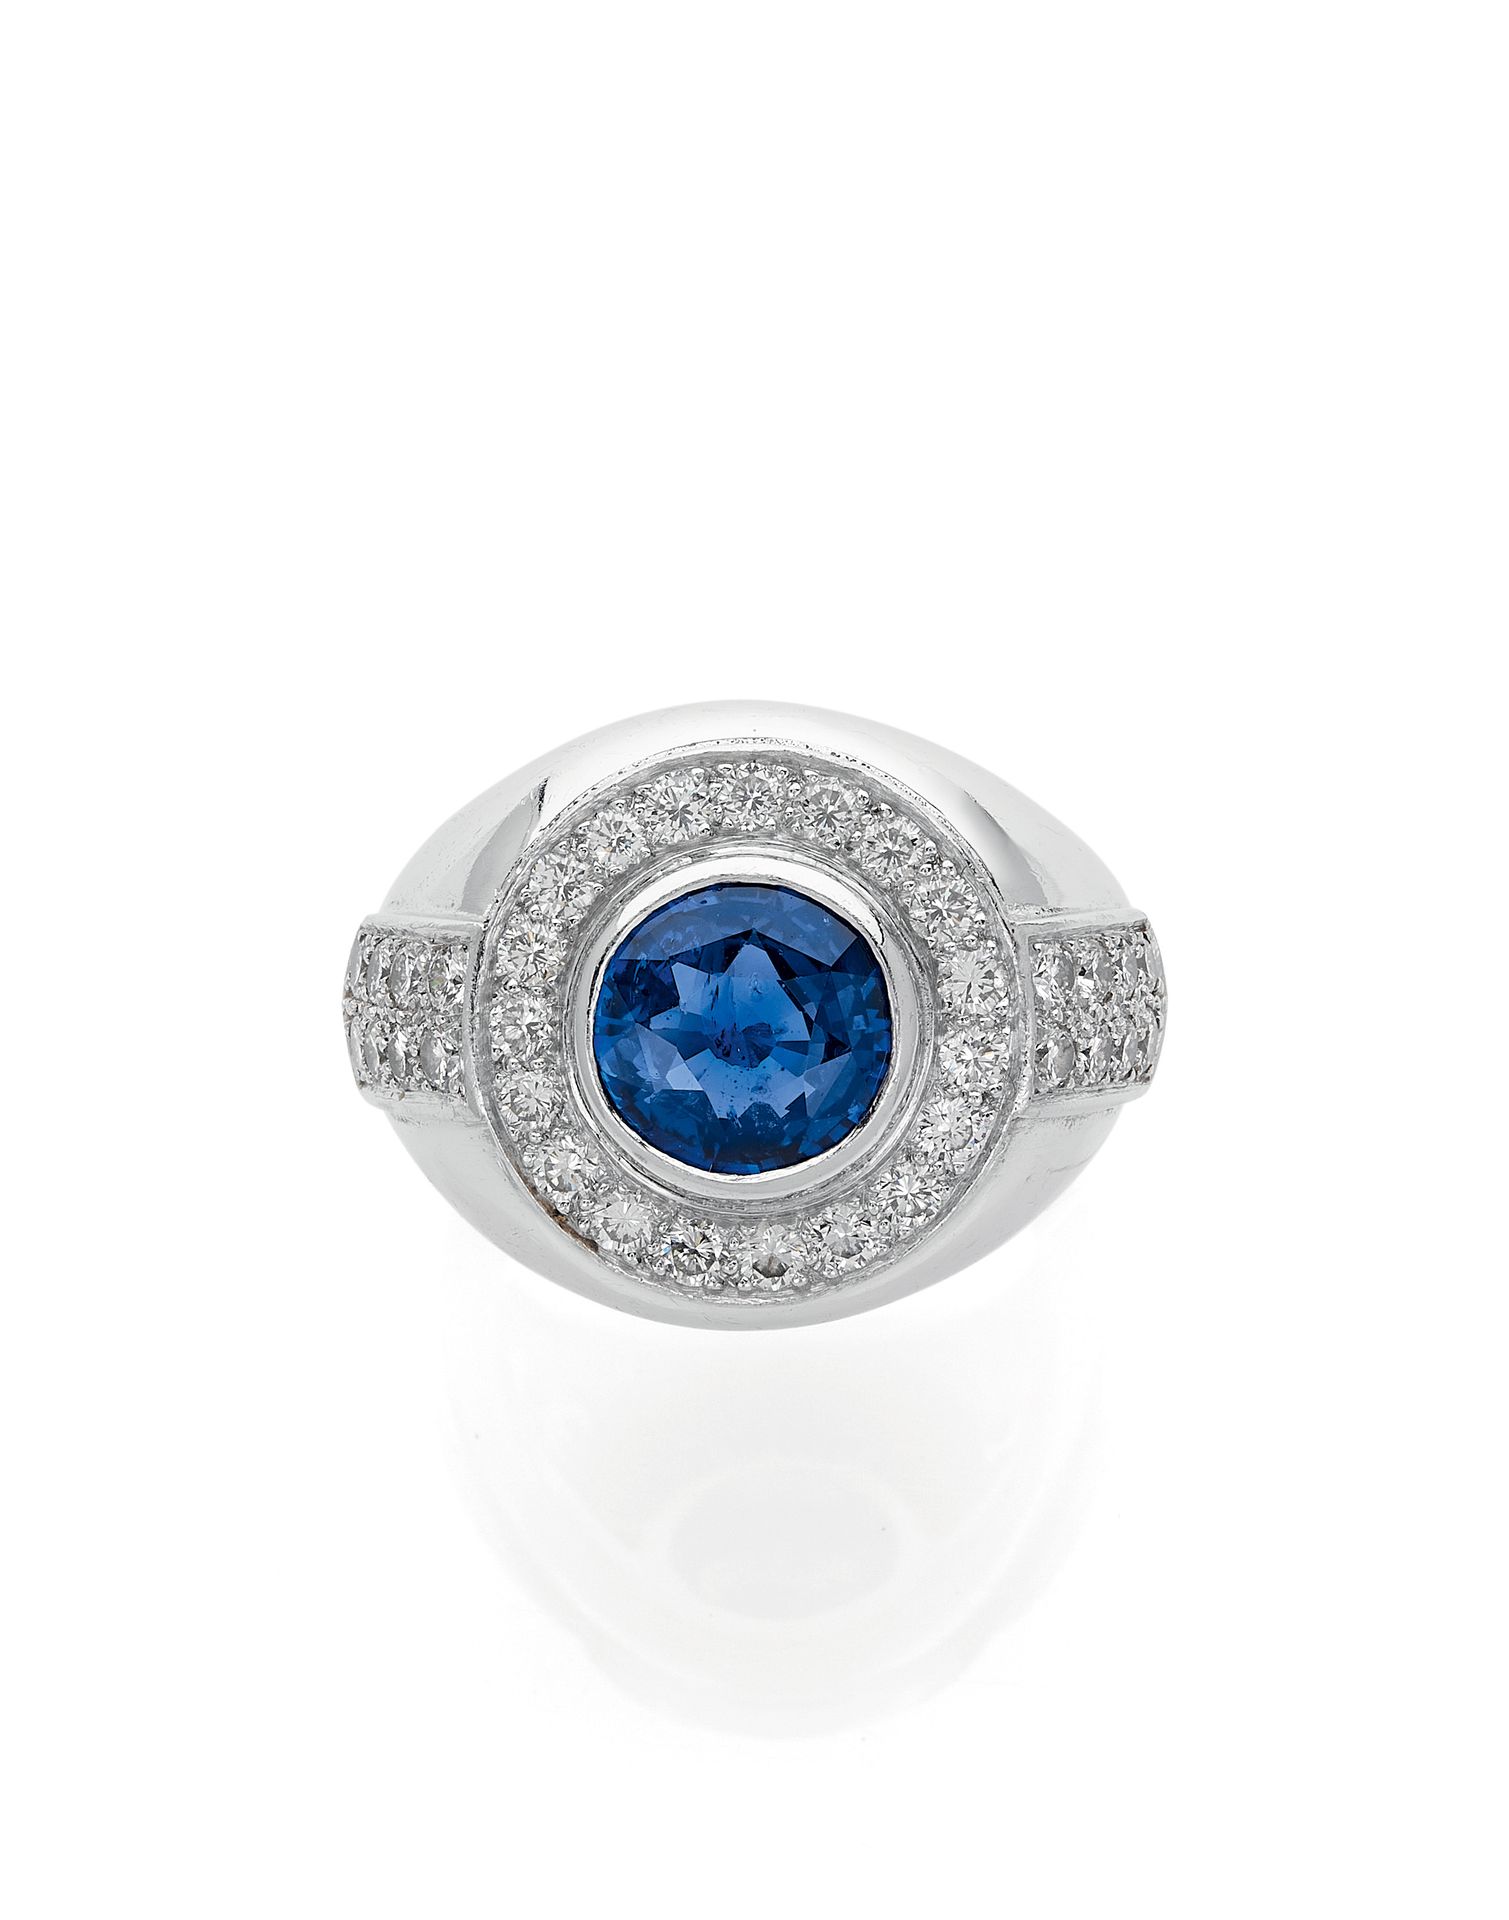 Null 重要的铃声 
持有一颗约3.50克拉的圆形蓝宝石，并镶嵌有明亮式切割钻石。戒指上镶嵌着两行明亮式切割钻石。这枚戒指是用铂金镶嵌的。法国的工作。 
巴黎&hellip;